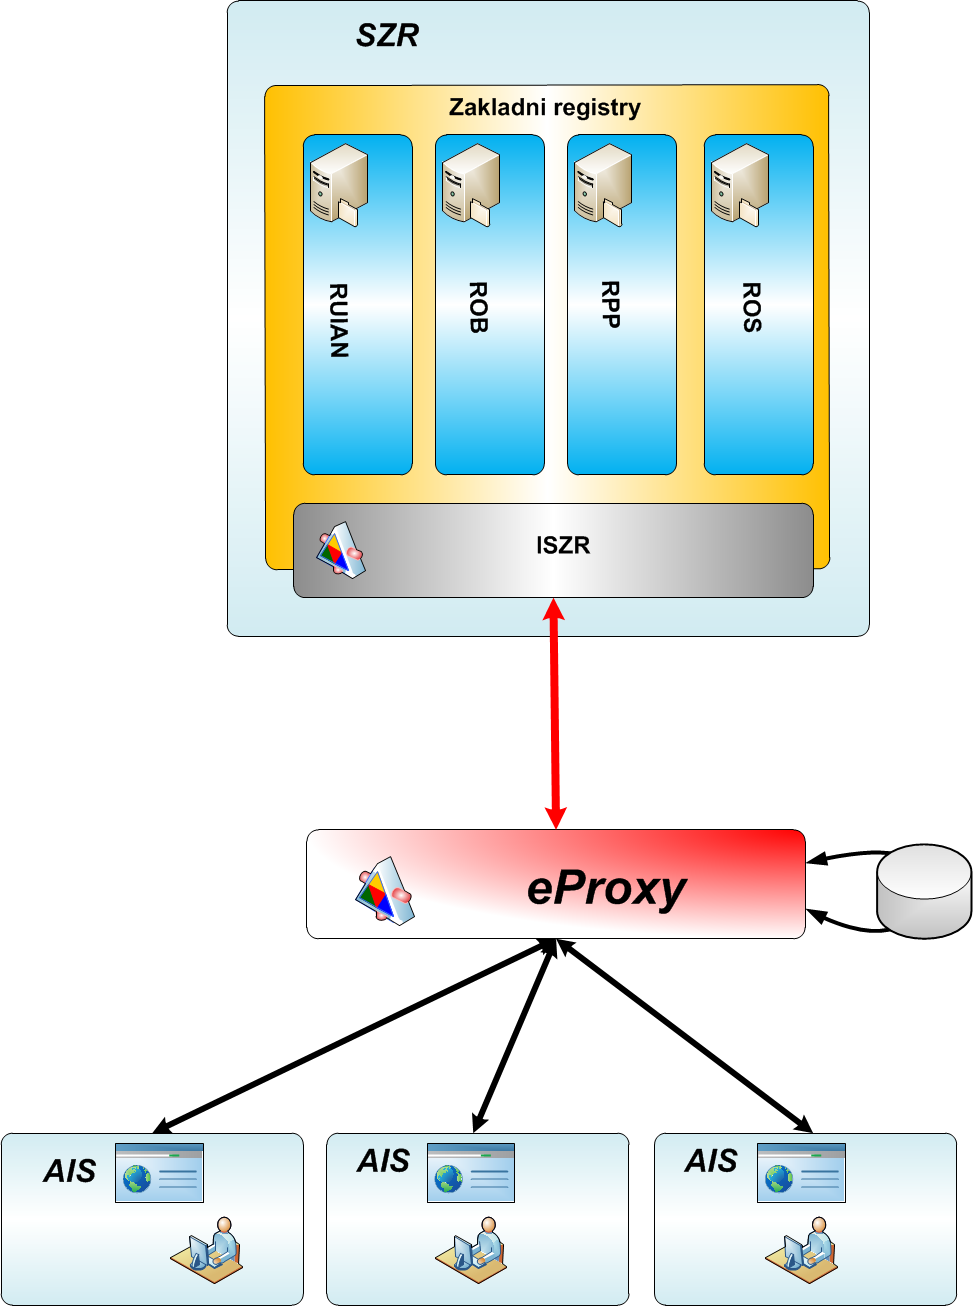 eproxy jak funguje Propojení každého AIS zvlášť je problém e-proxy řeší: Napojení AISů na ISZR Konsolidace dat uvnitř úřadu e-proxy zajistí: Jednotnou komunikaci vůči ISZR Logování